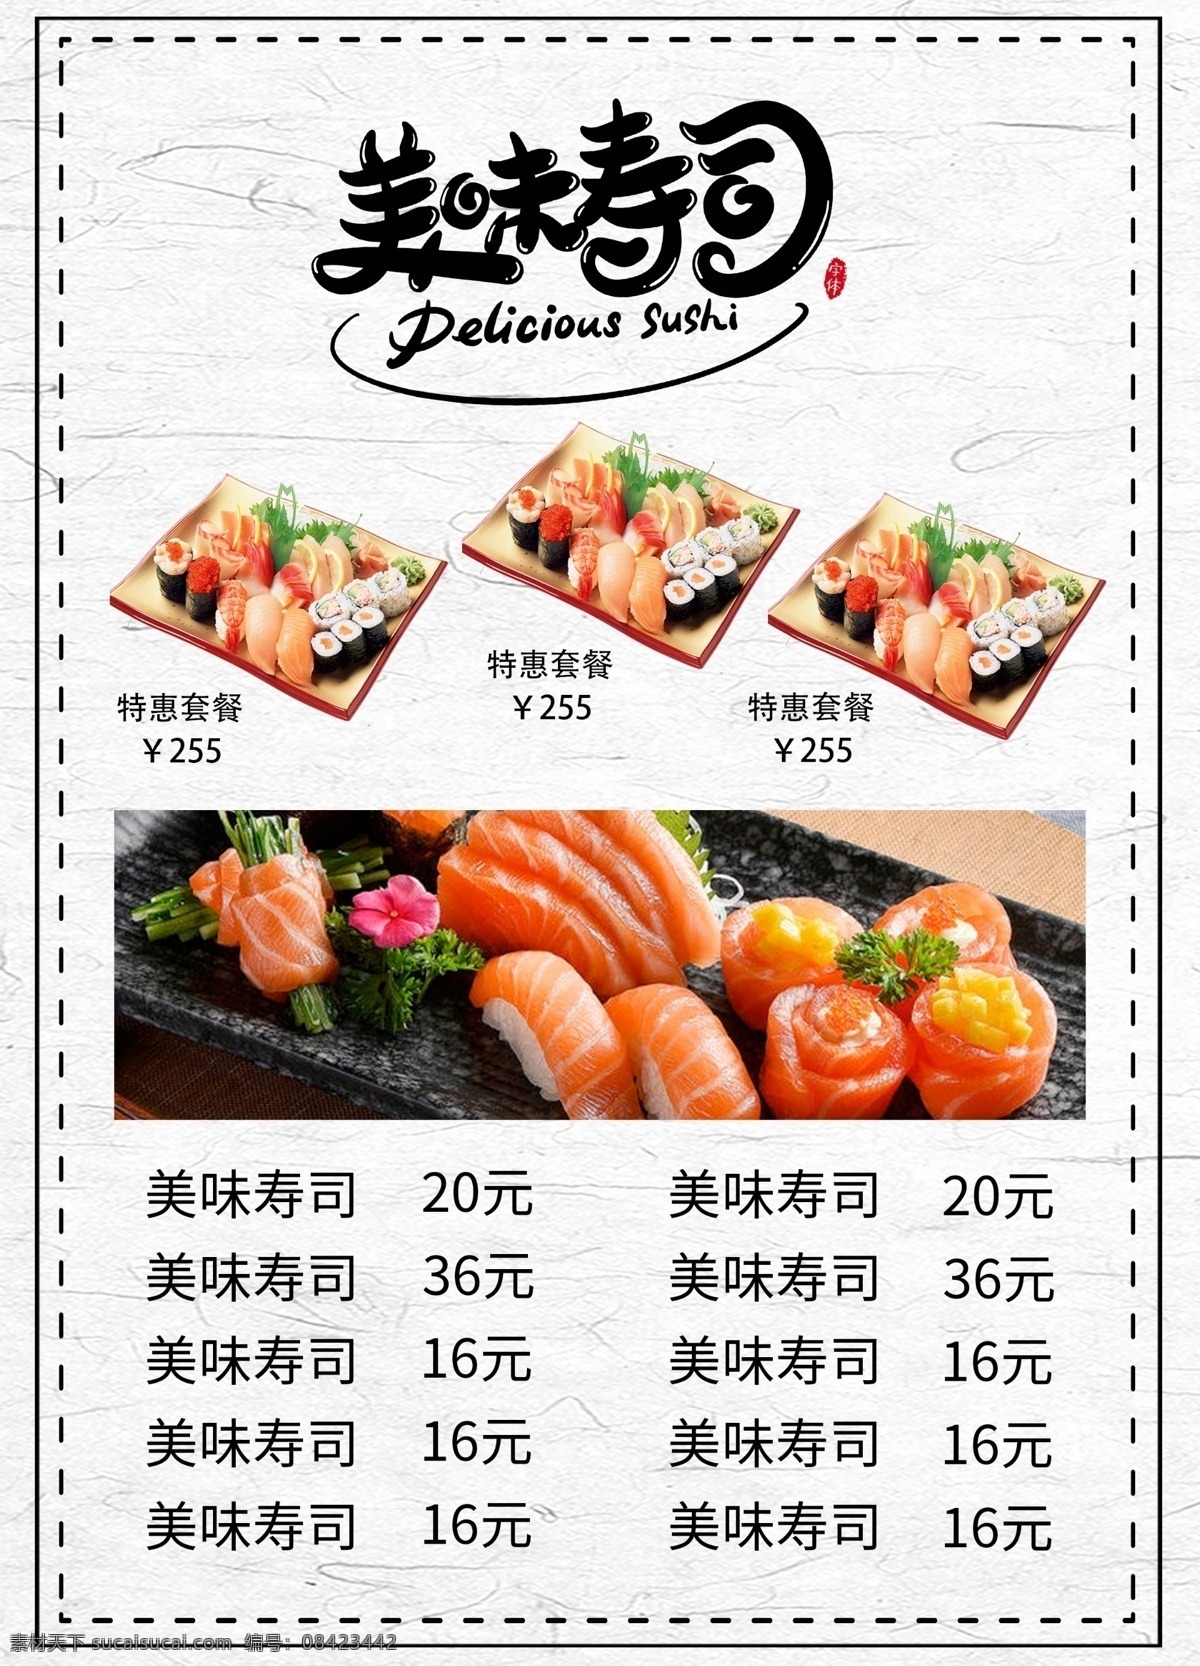 寿司店宣传单 寿司 dm单 彩页 宣传单 单页 传单 菜单 餐饮菜单 餐饮传单 美食传单 寿司传单